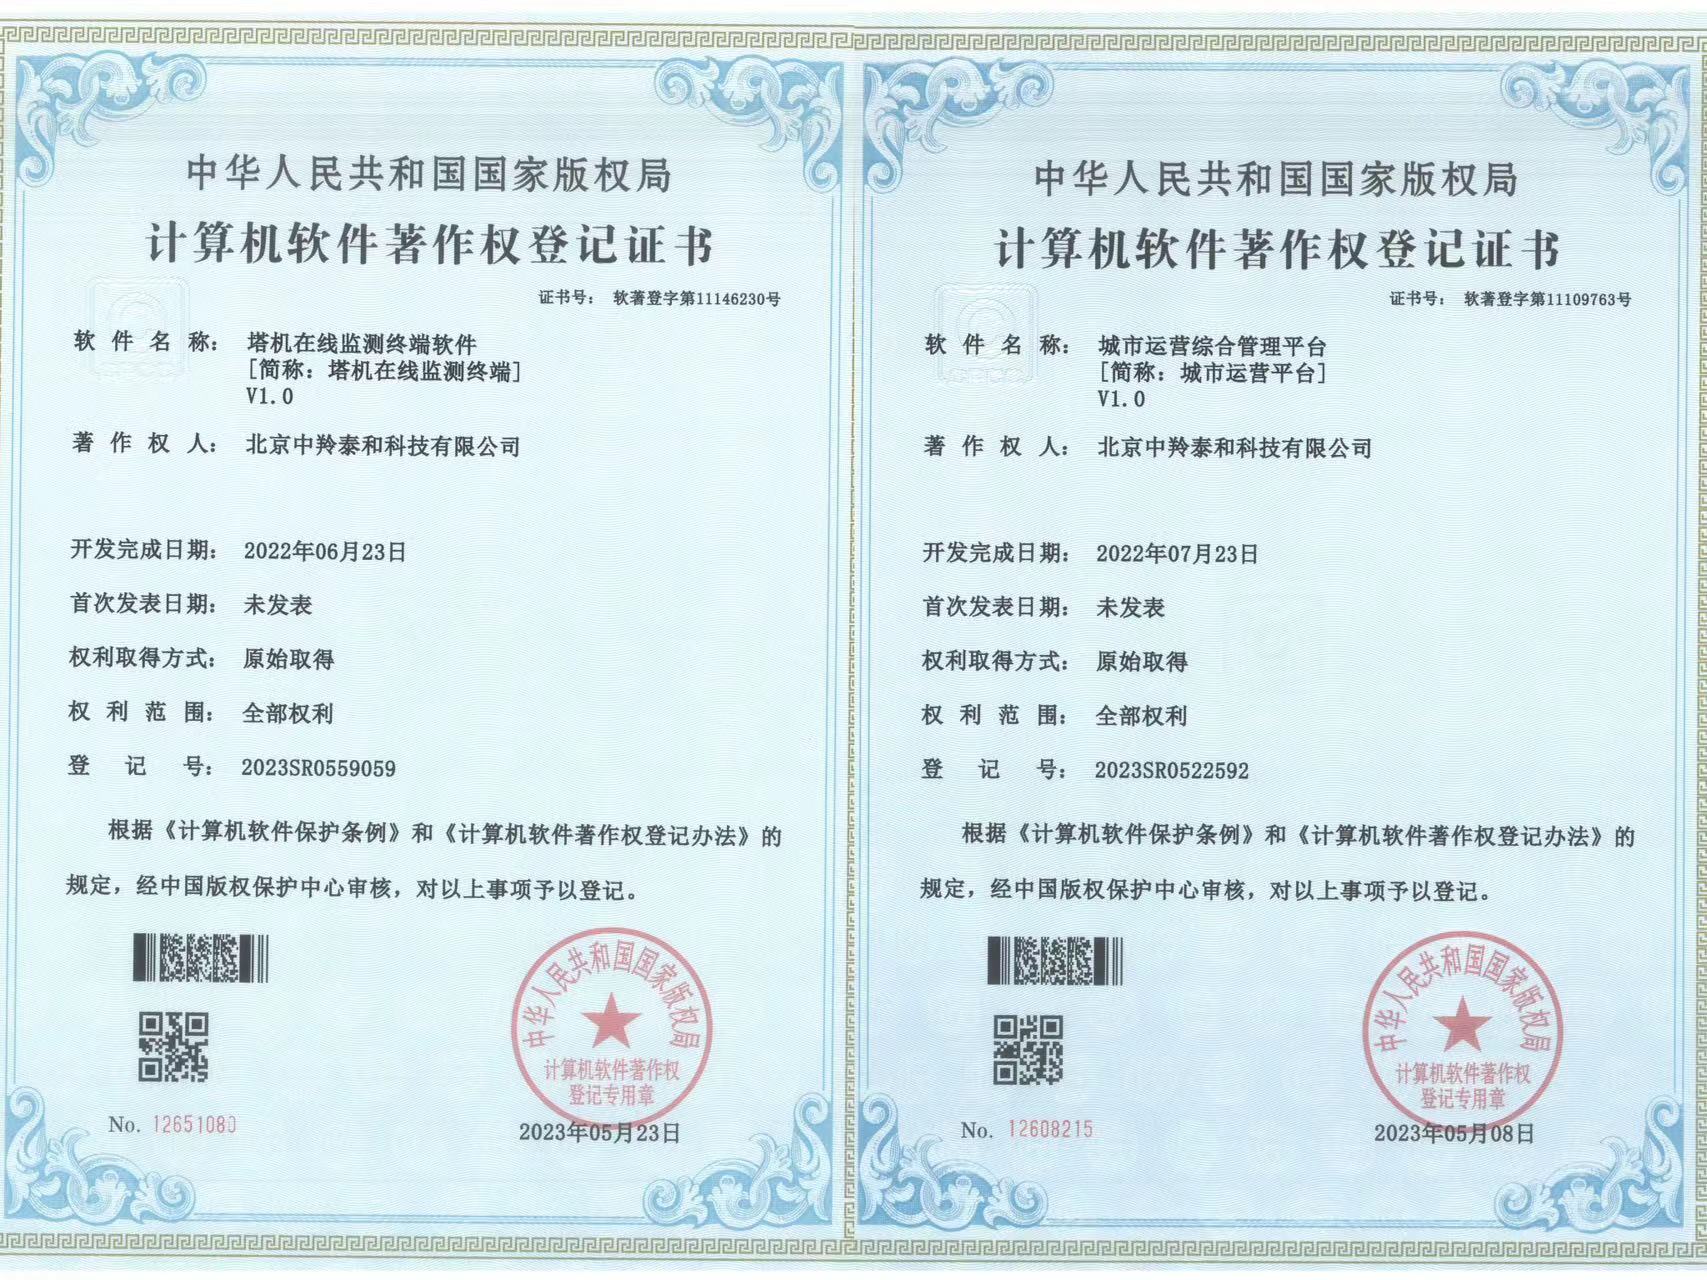 【喜讯】中羚泰和公司又获得六项《计算机软件著作权登记证书》